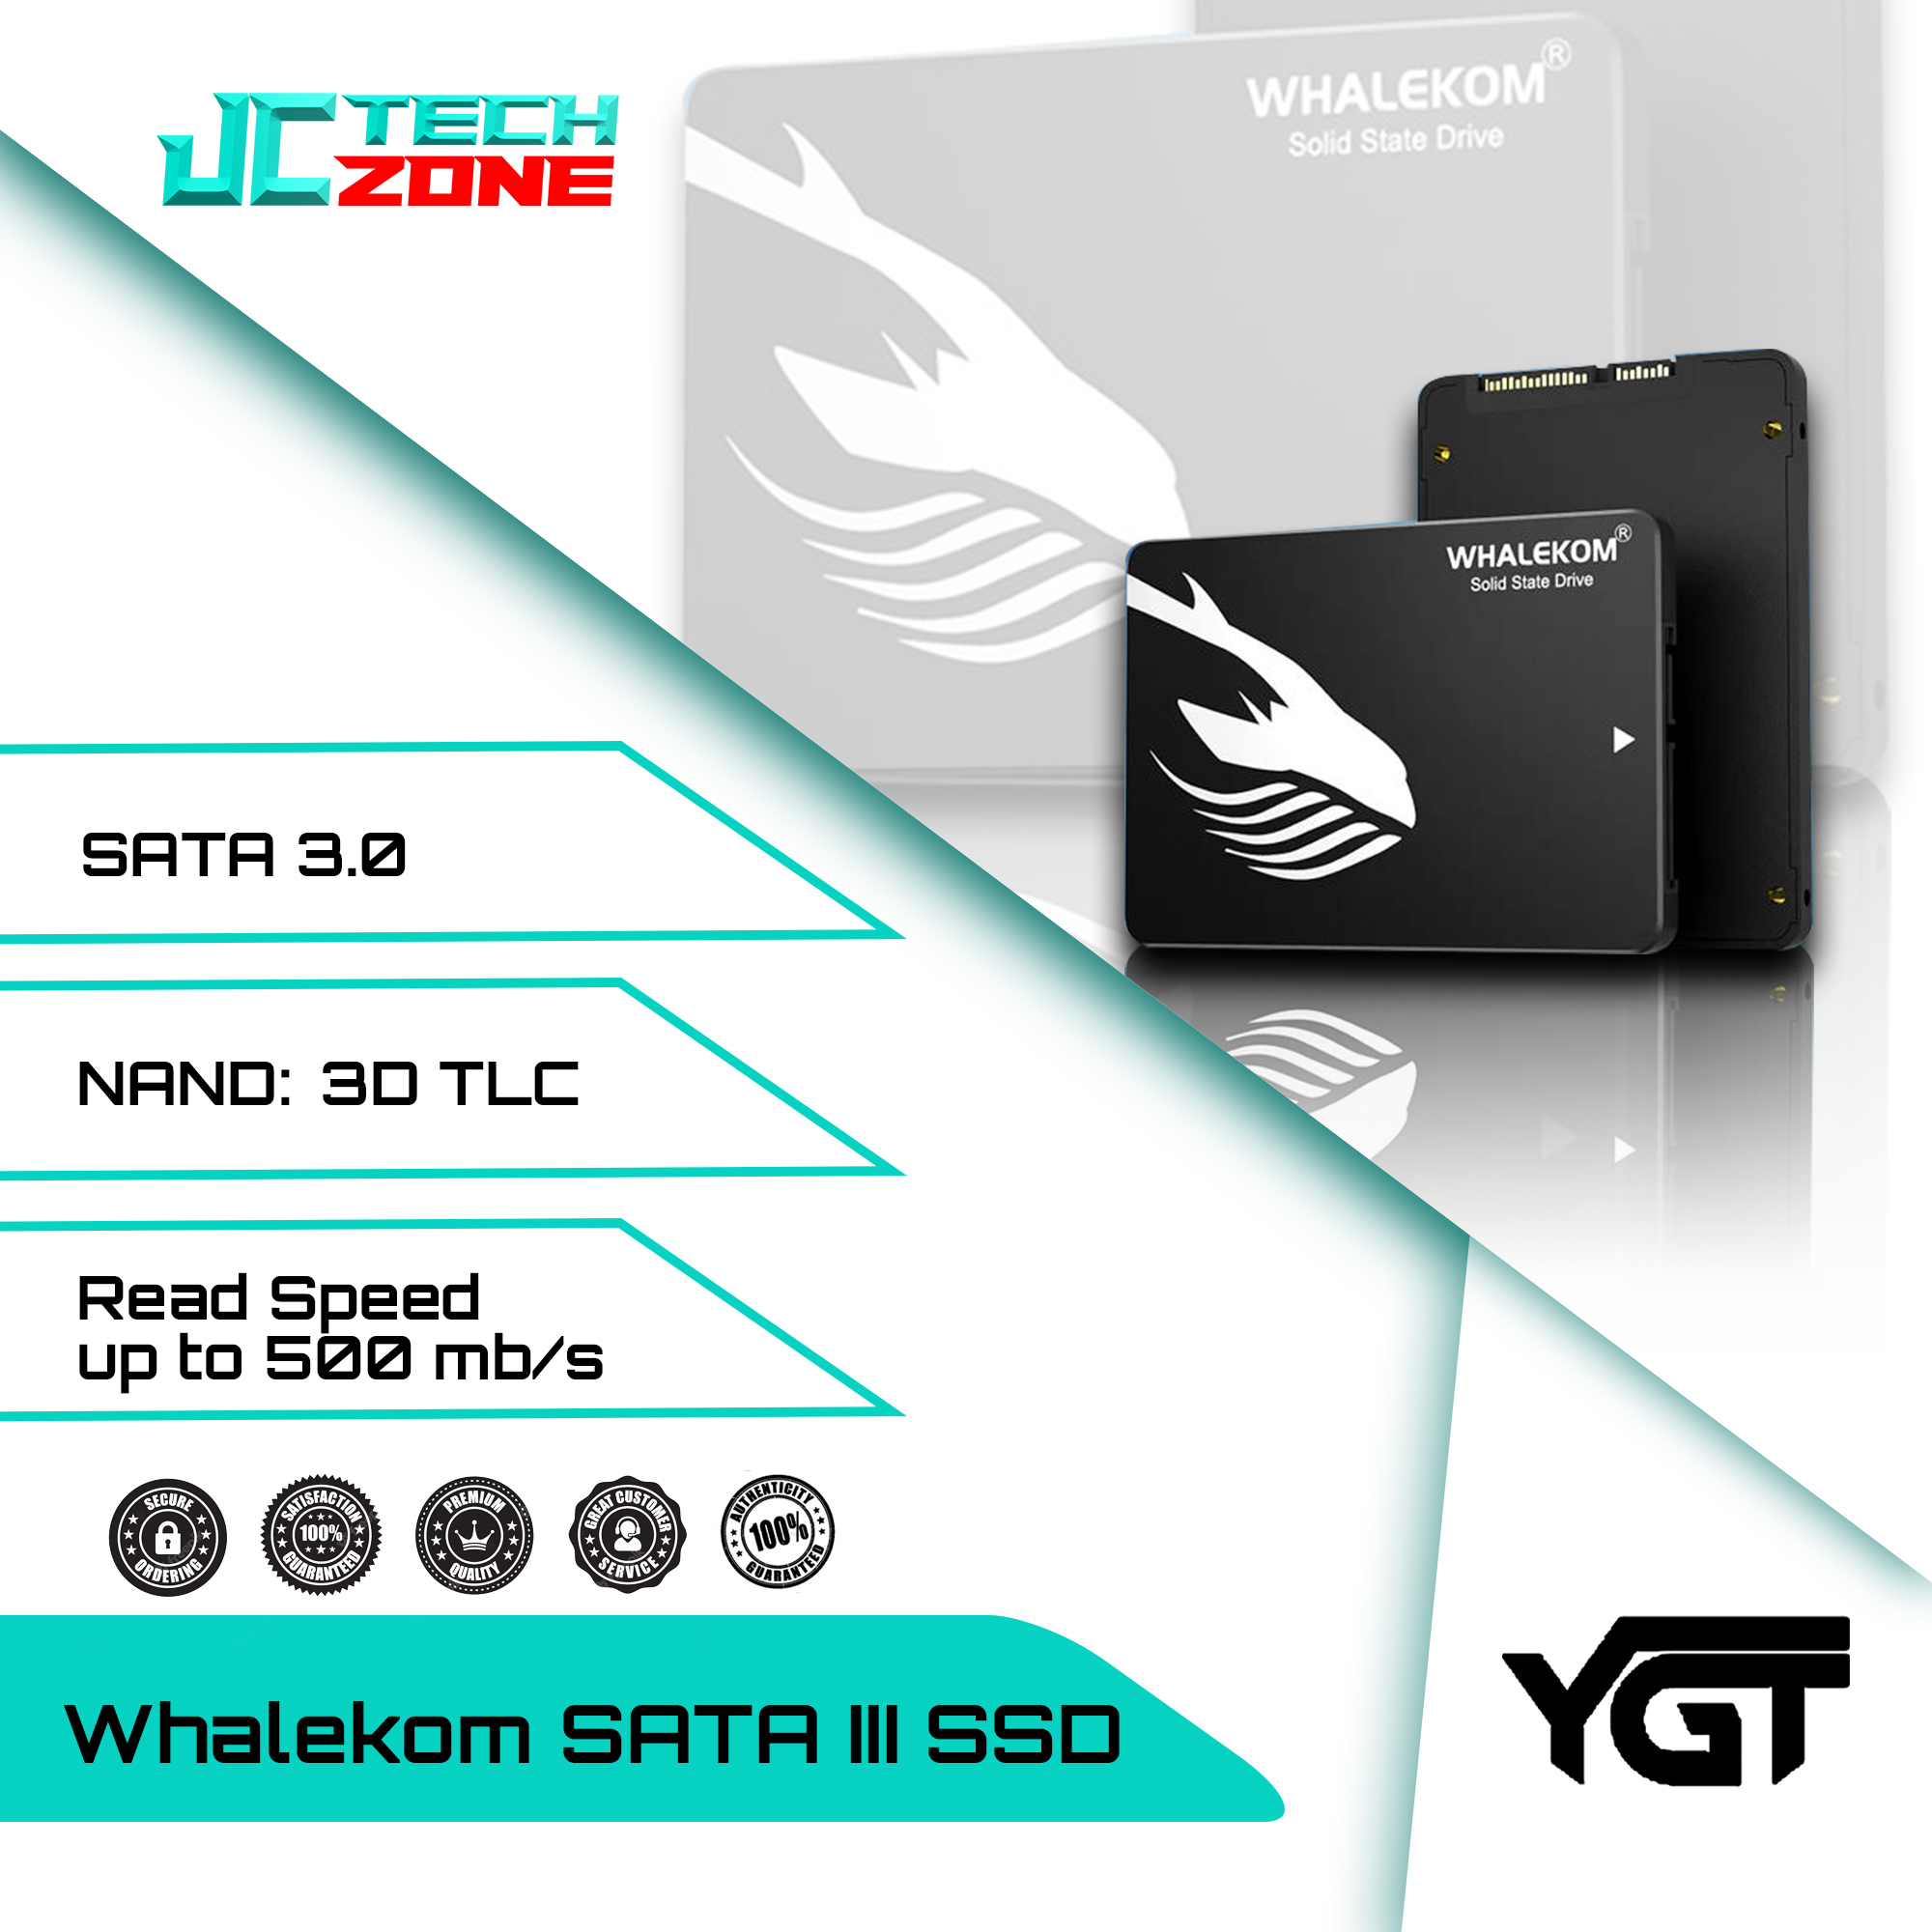 WKSA-512 SATA III SSD – 512GB Solid State Drive 